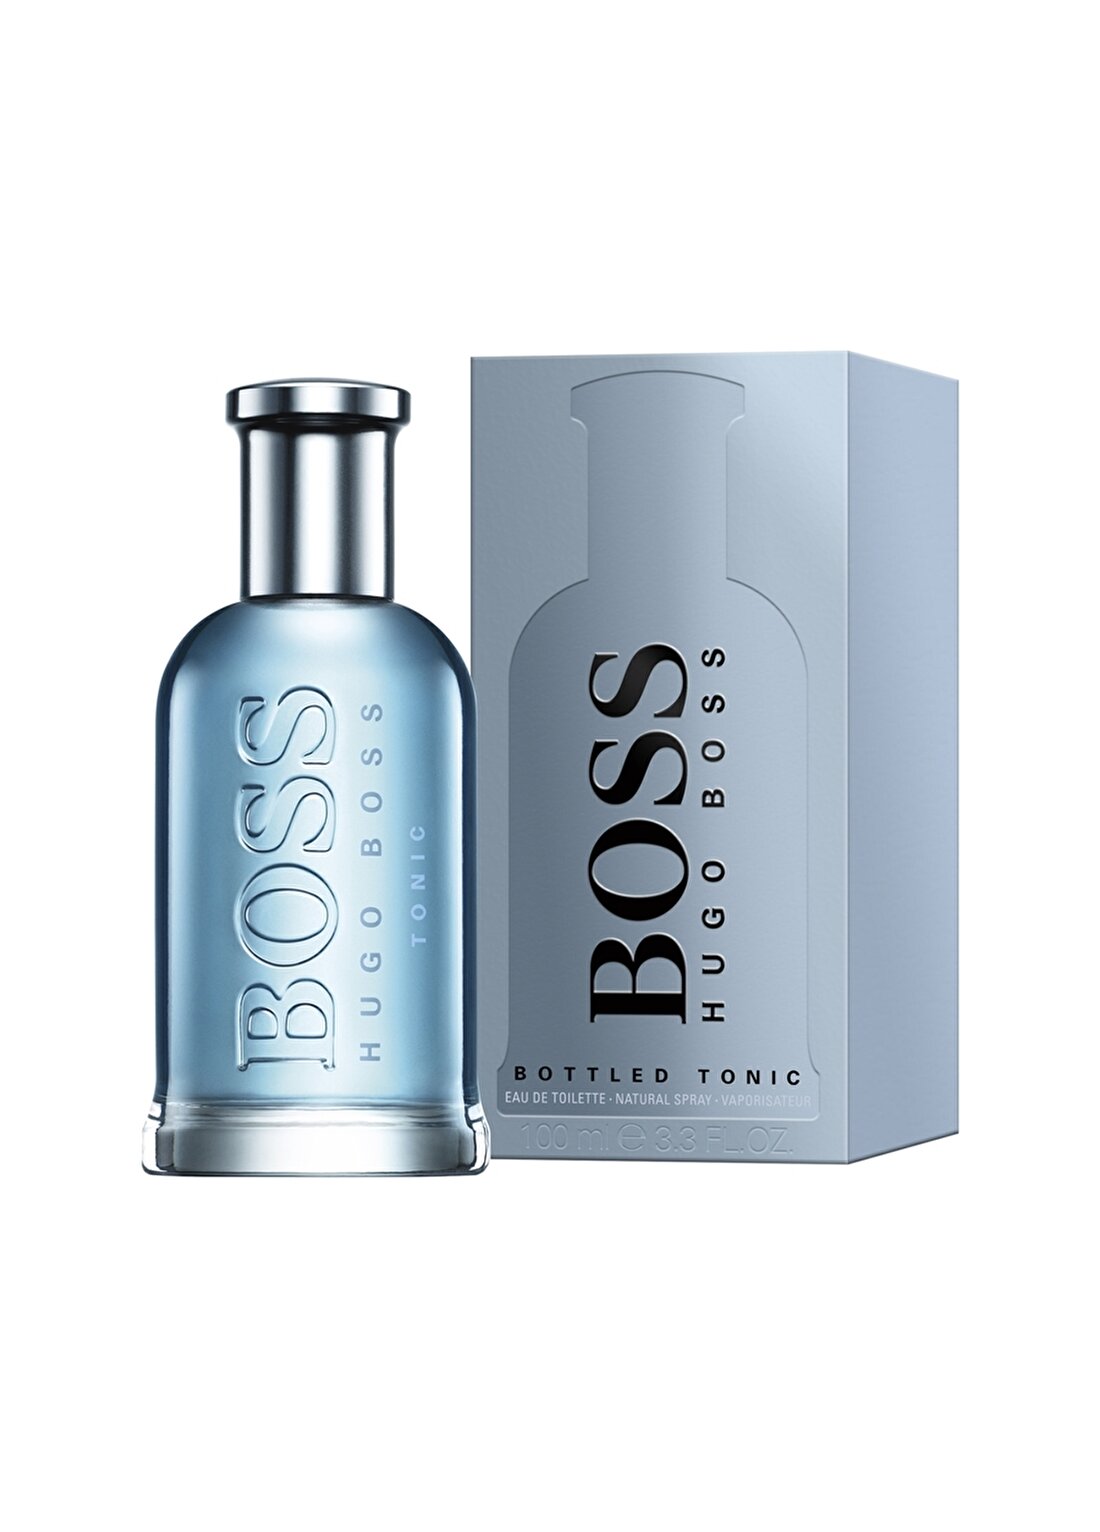 Hugo Boss Bottled Intense Edp 100 Ml Erkek Parfüm